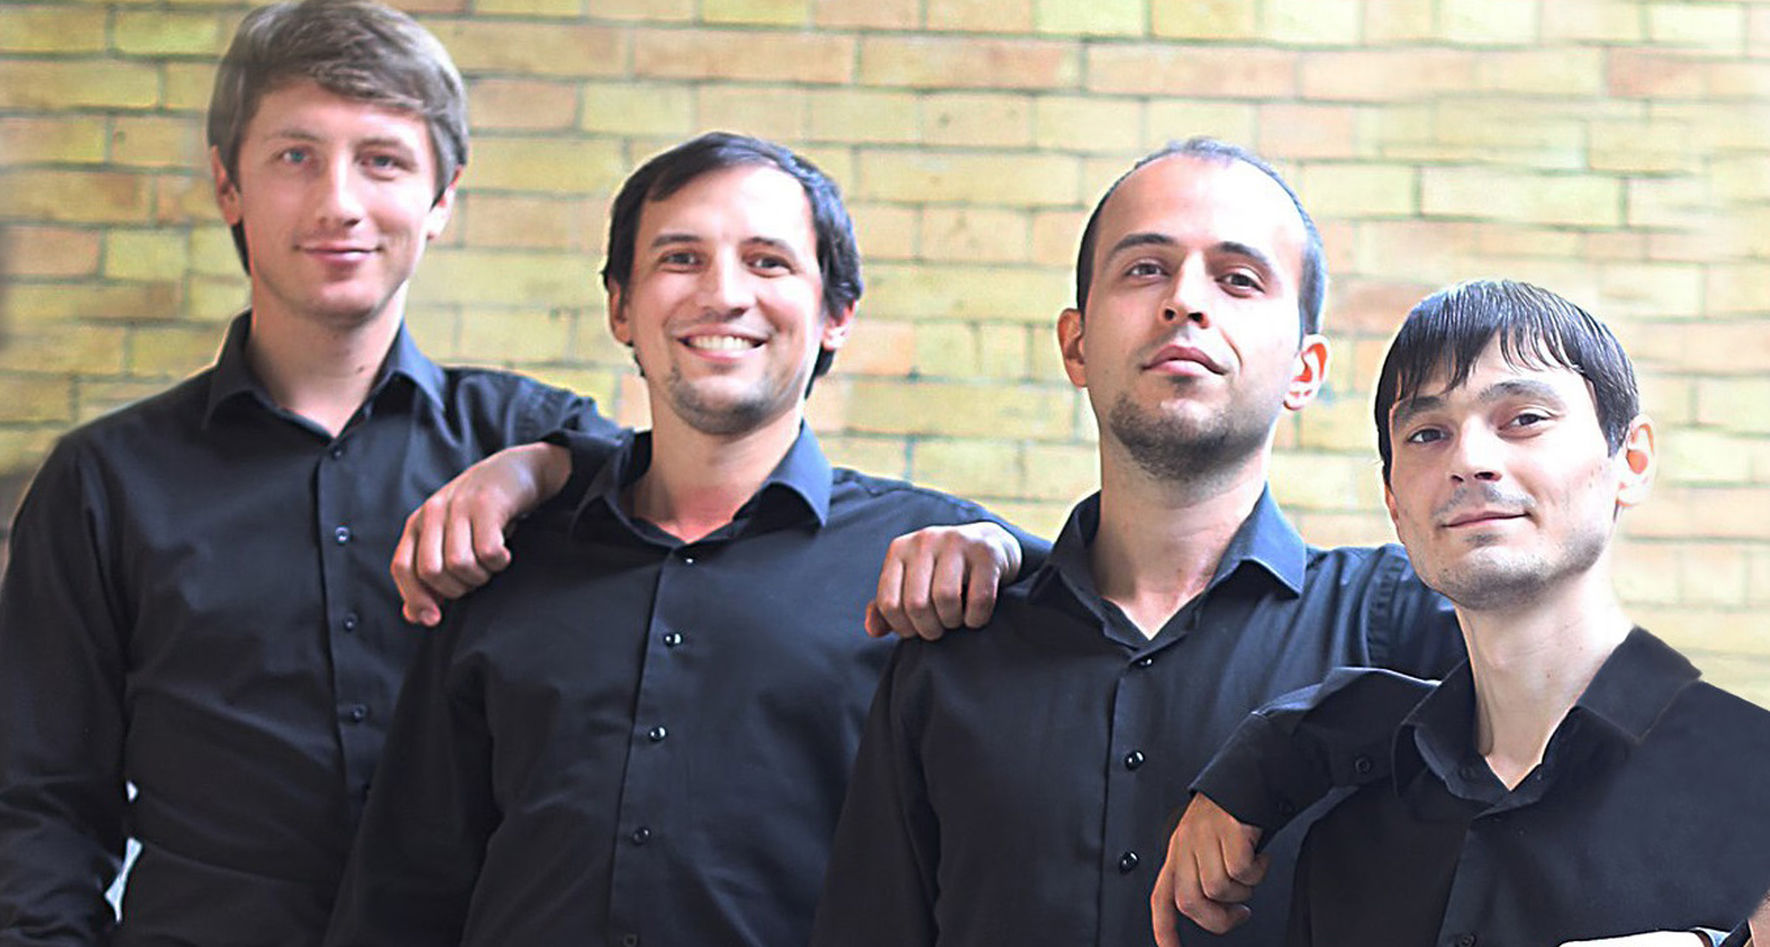 Java Jive, the Barbershop quartet from Russia